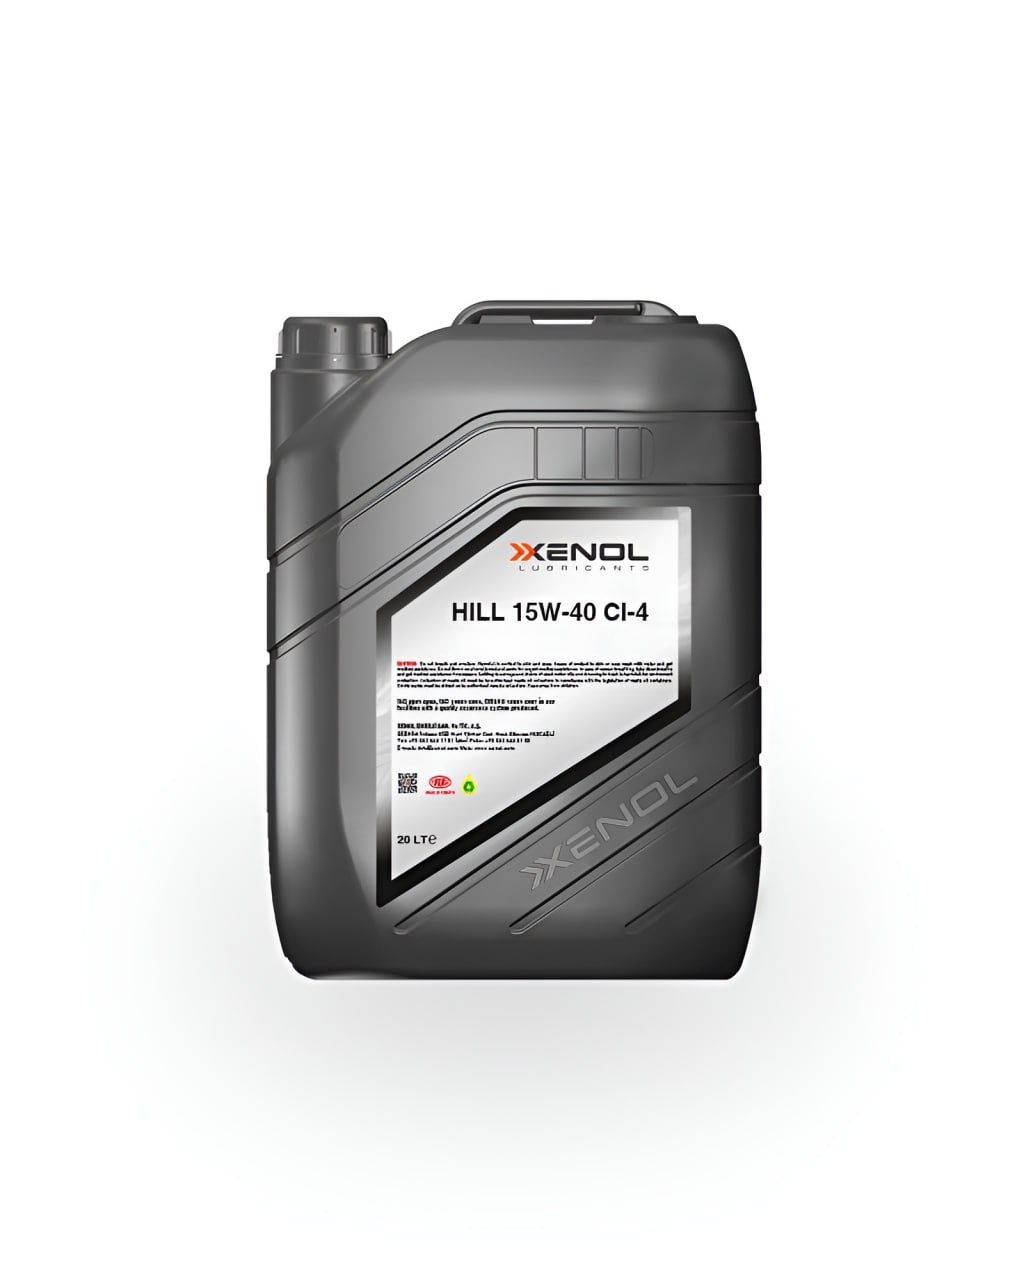 Xenol HILL 15W-40 CI-4